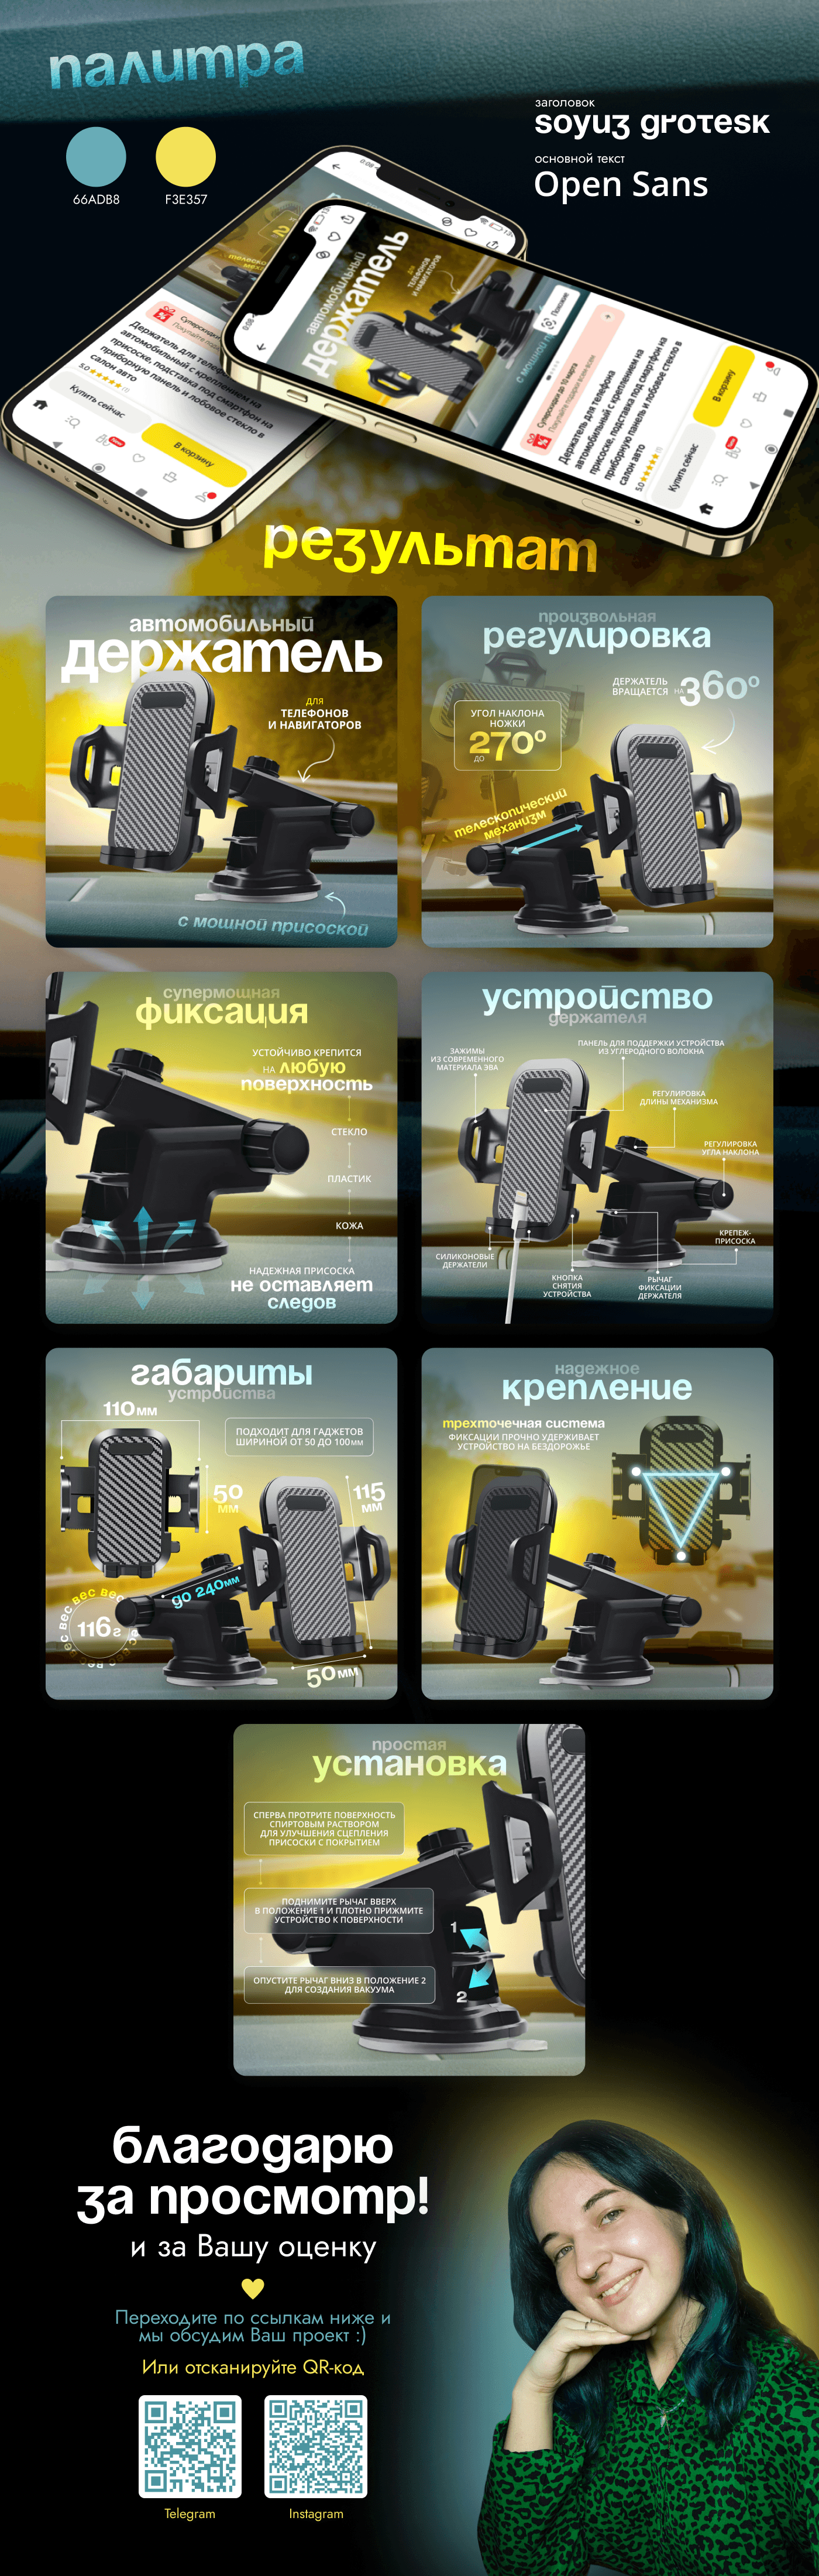 техника автомобиль продающие карточки инфографика ozon вайлдберриз дизайн карточек инфографика вайлдберриз Яндекс маркет